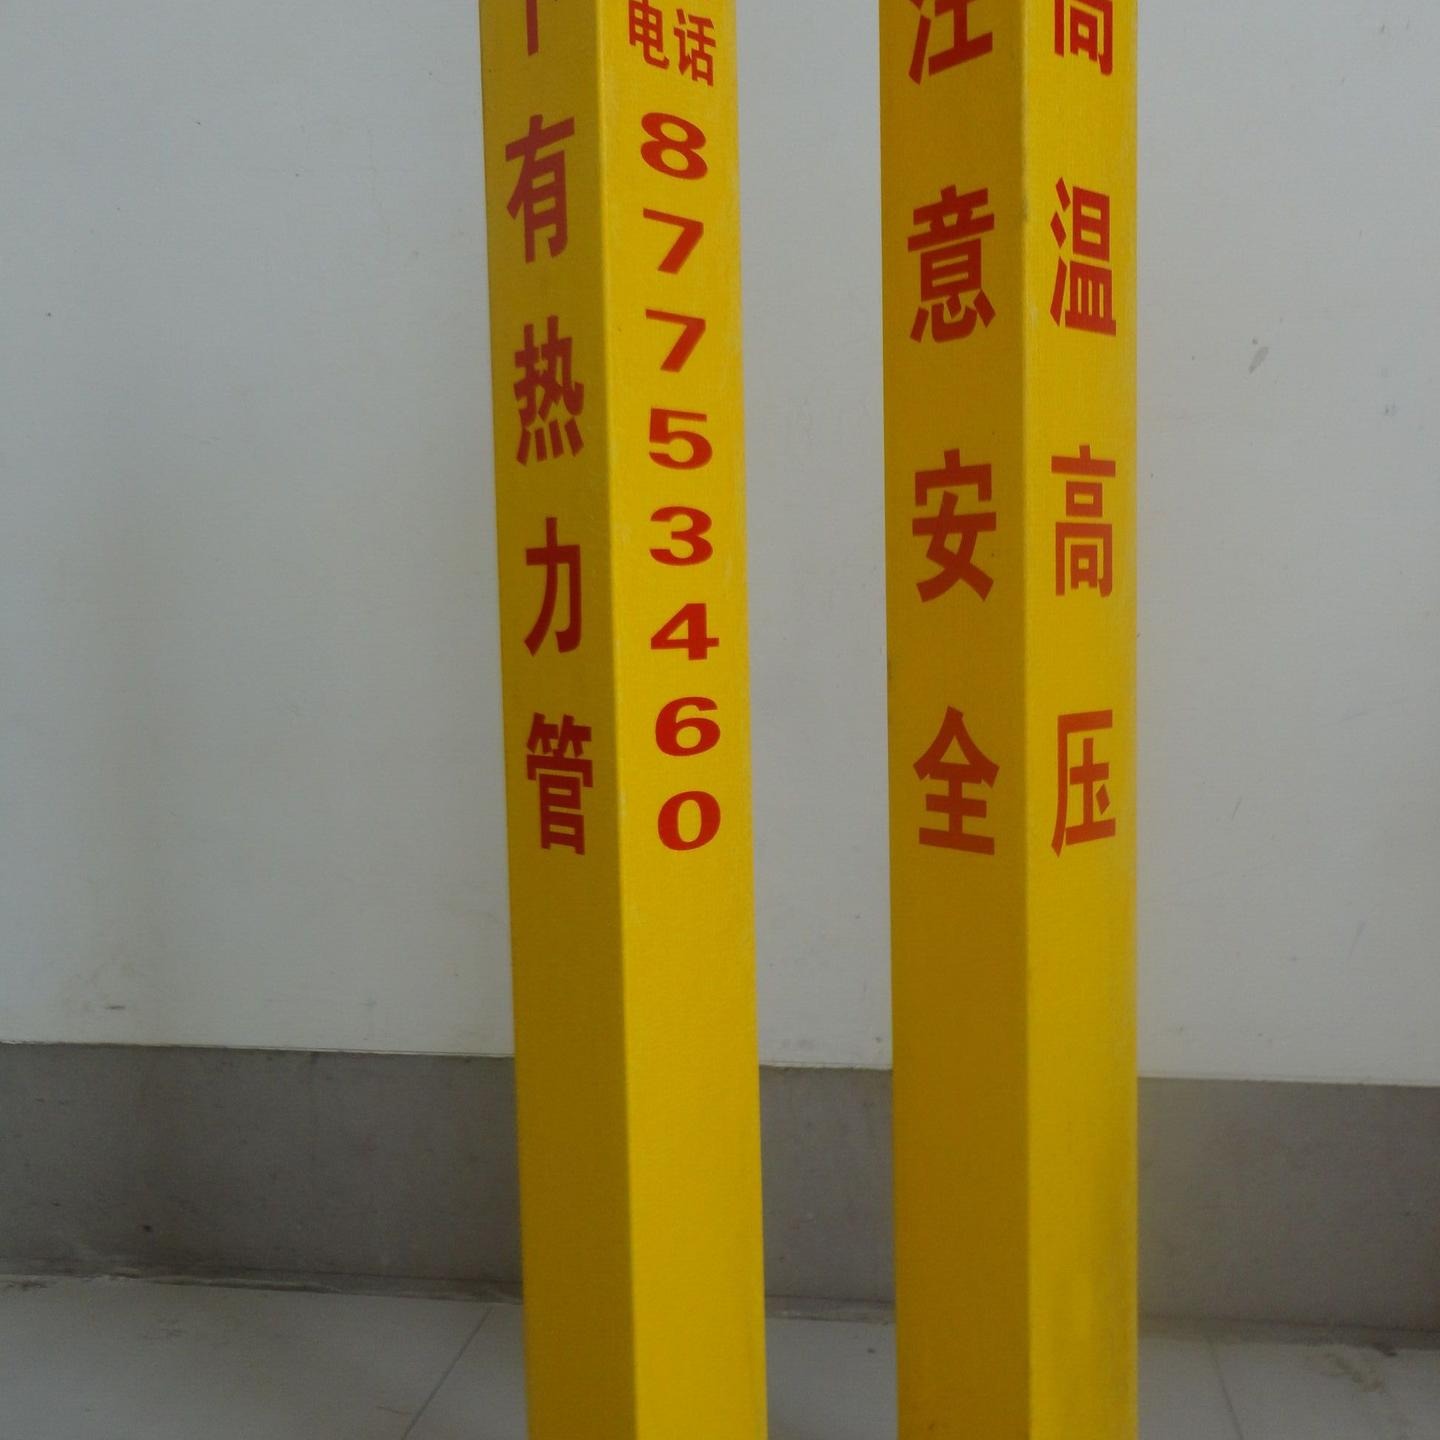 电缆电力警示桩/供水管道标示燃气地埋桩/光缆标示界桩/PVC玻璃钢标